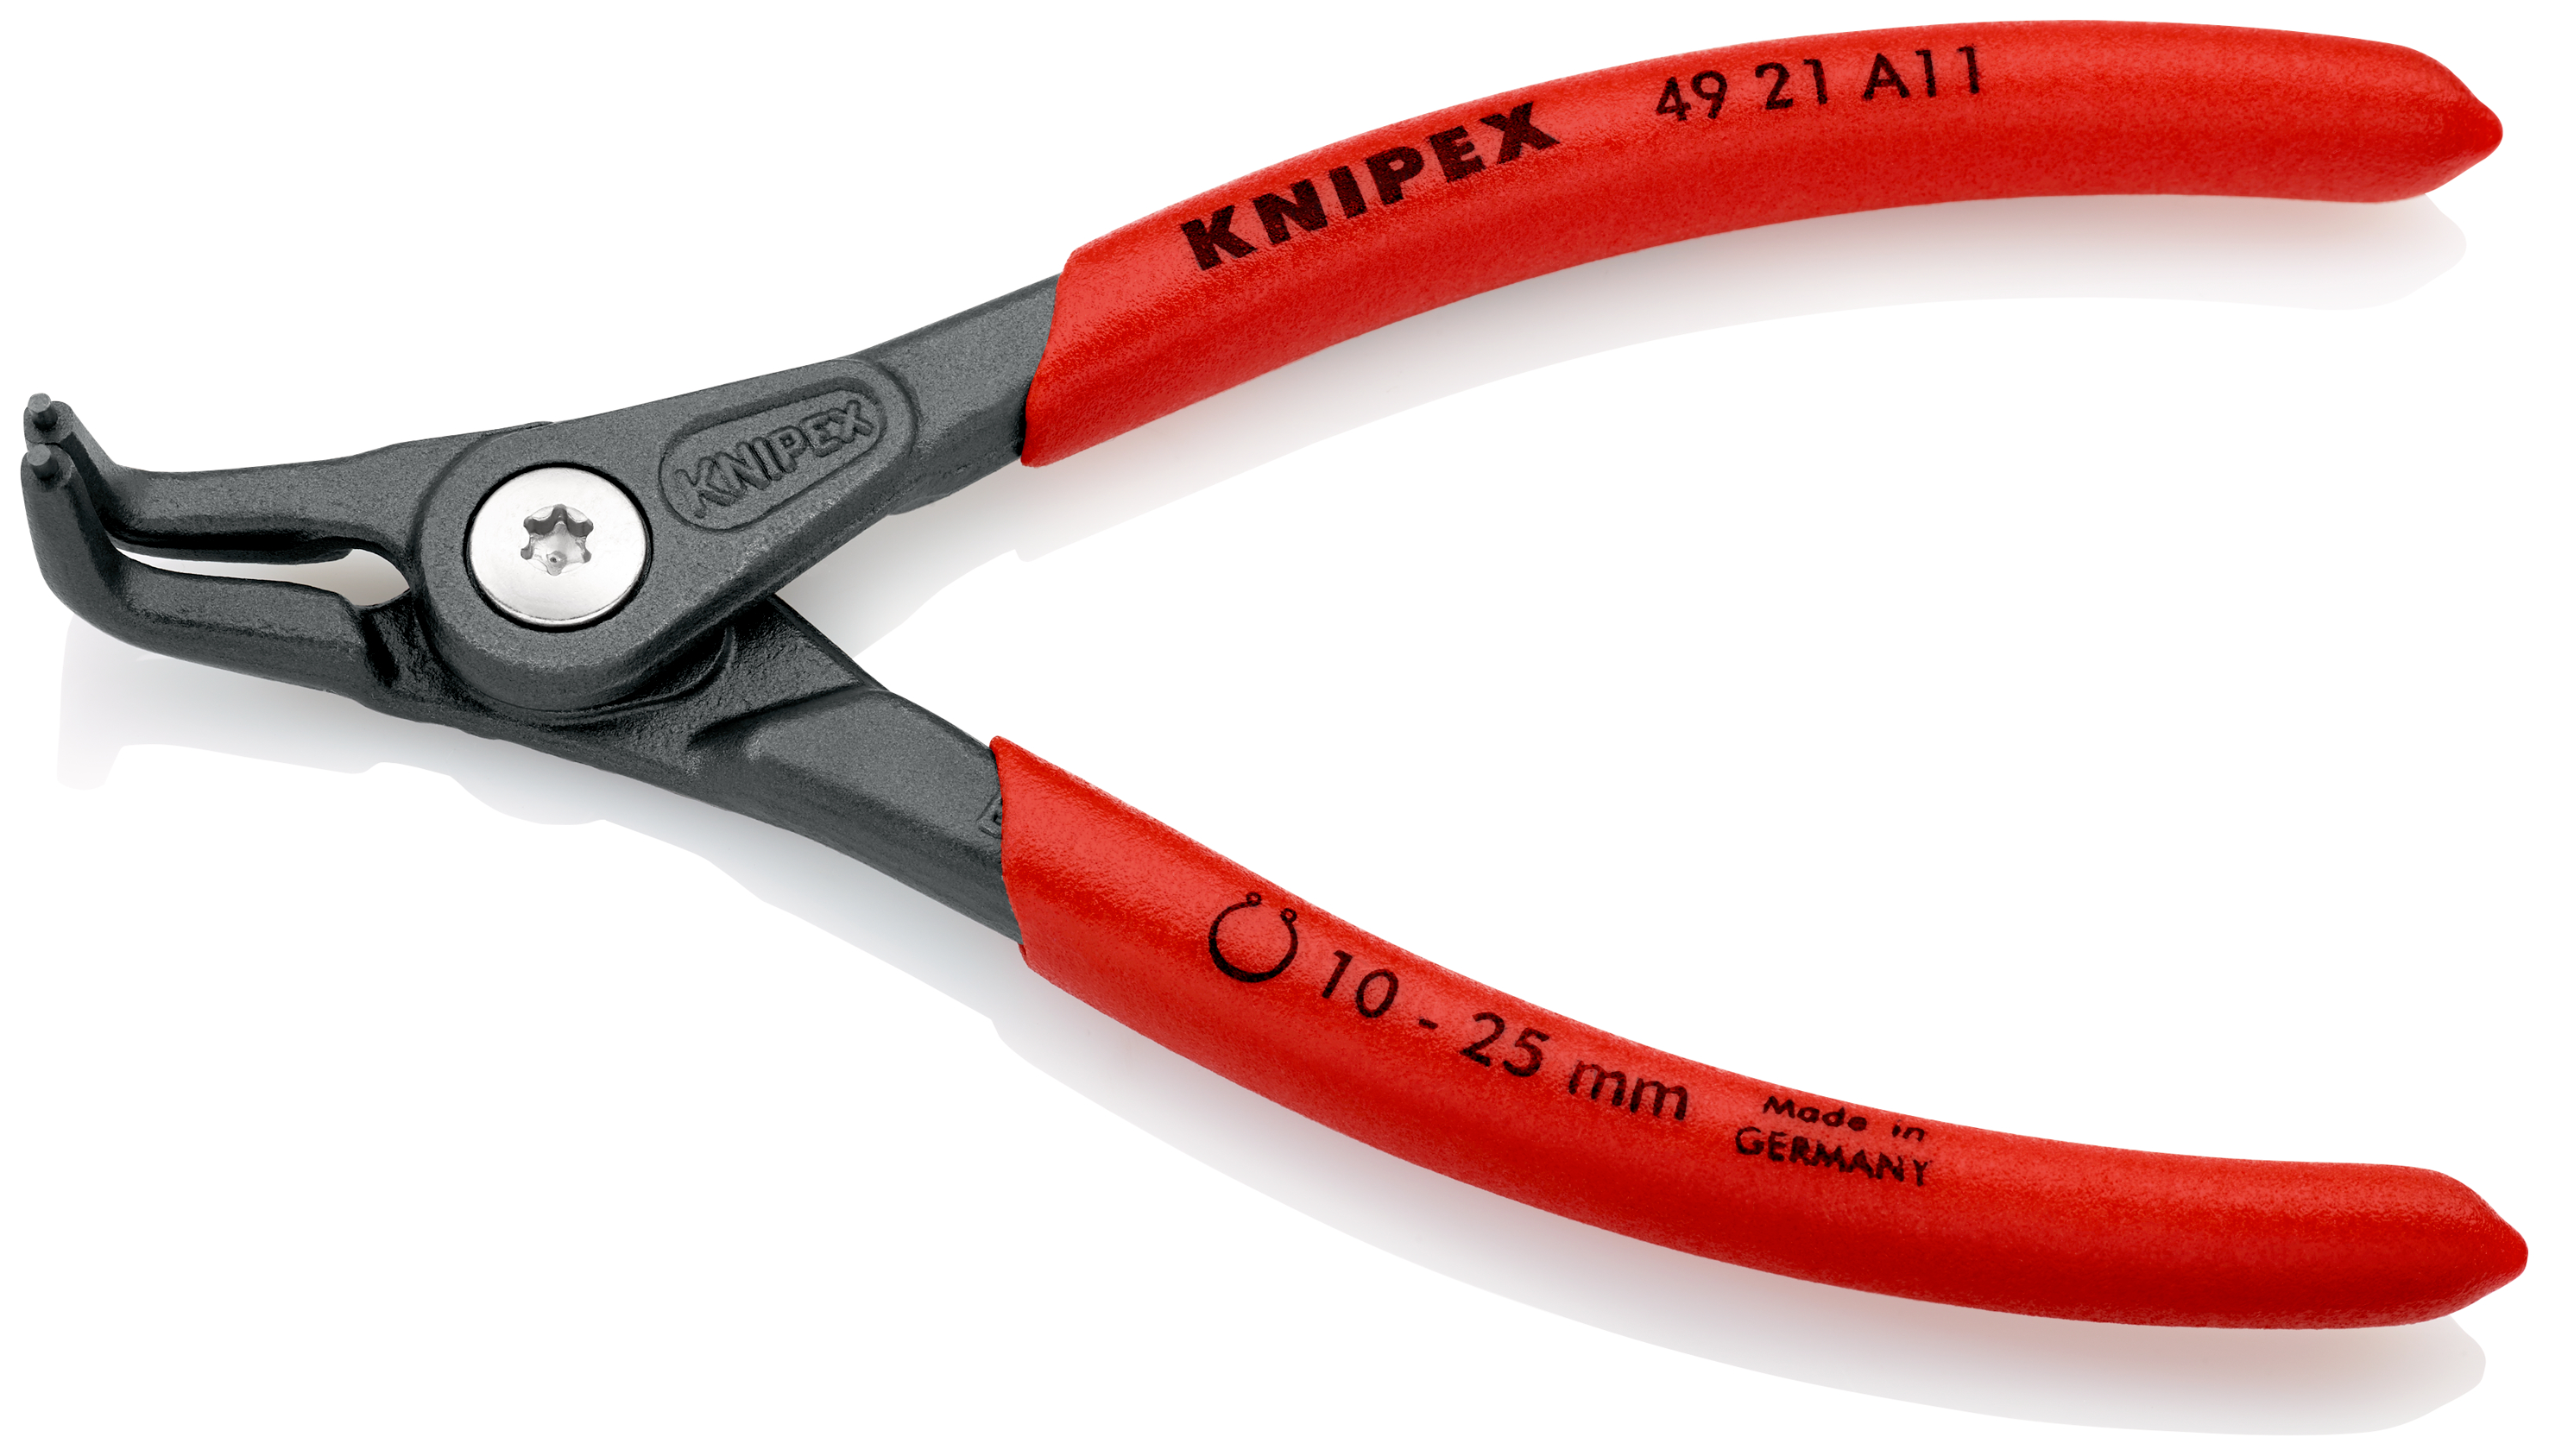 Knipex 4921A11 Cleste pentru inele de siguranță de interior, lungime 130 mm